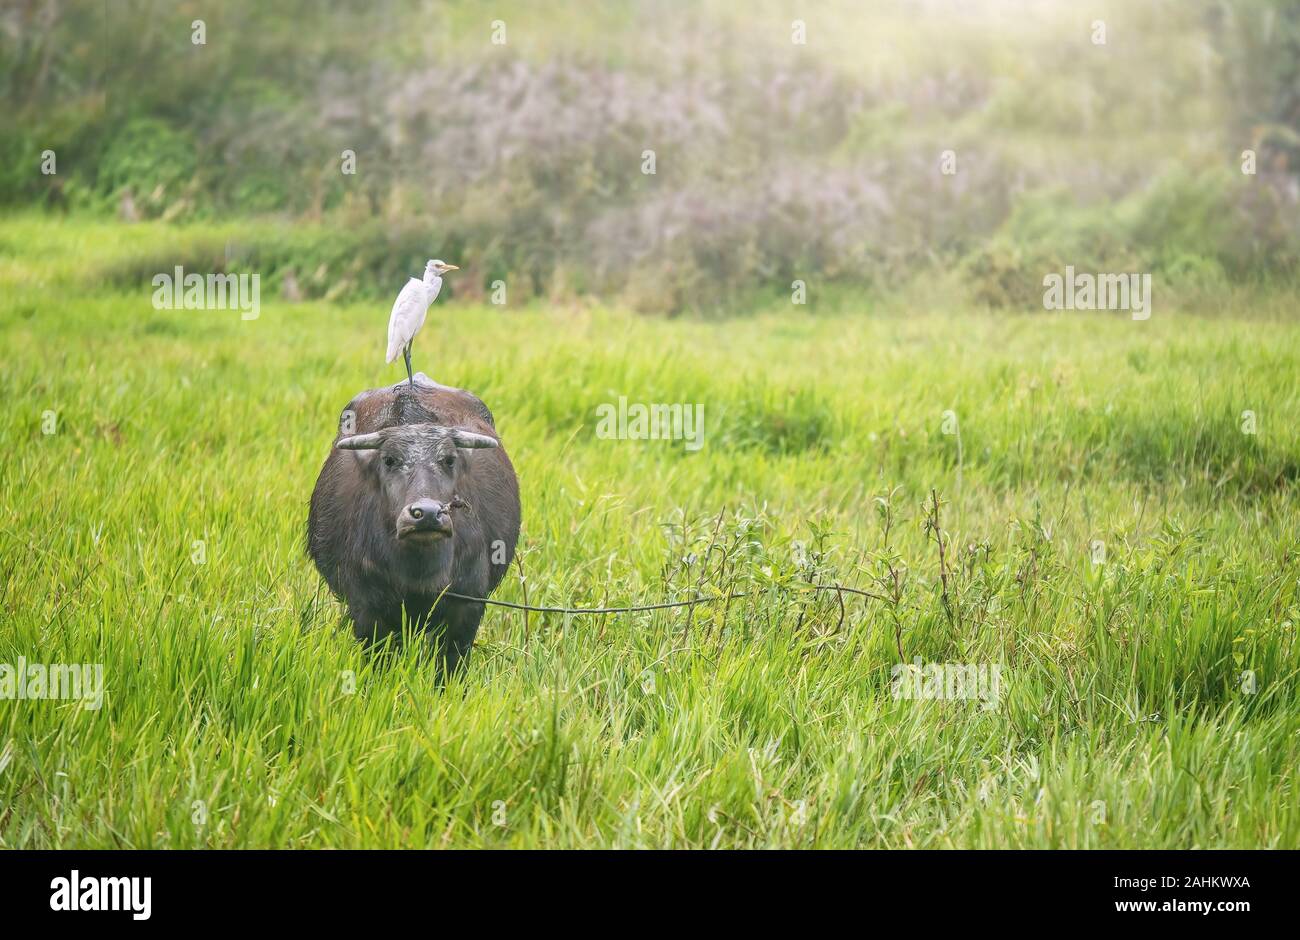 Ein carabao (Bubalus bubalis") stehen in einem Feld mit einem kuhreiher auf seinem Rücken. Dies ist die Philippinen Arten von Wasserbüffel. Stockfoto